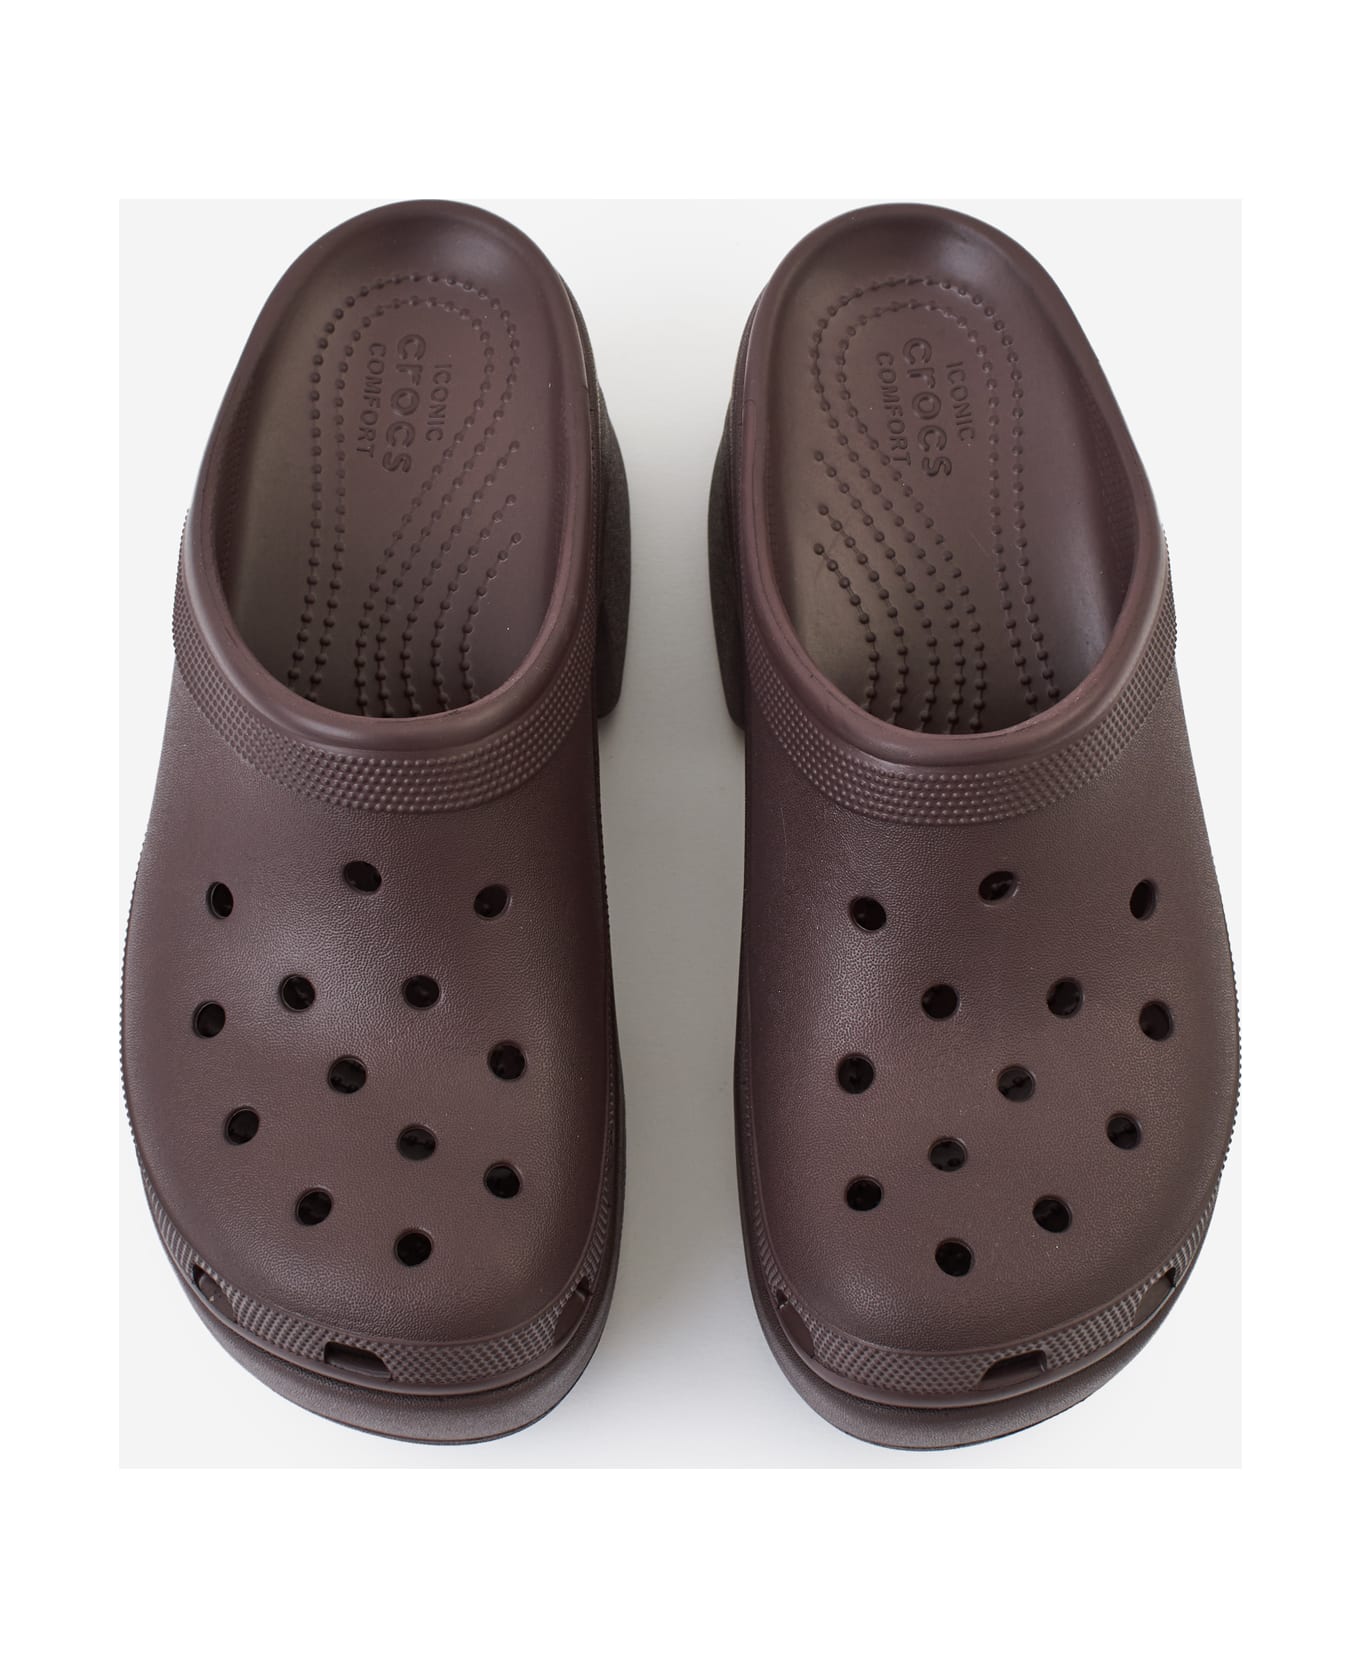 Crocs Siren Clog Sandals - Mocha